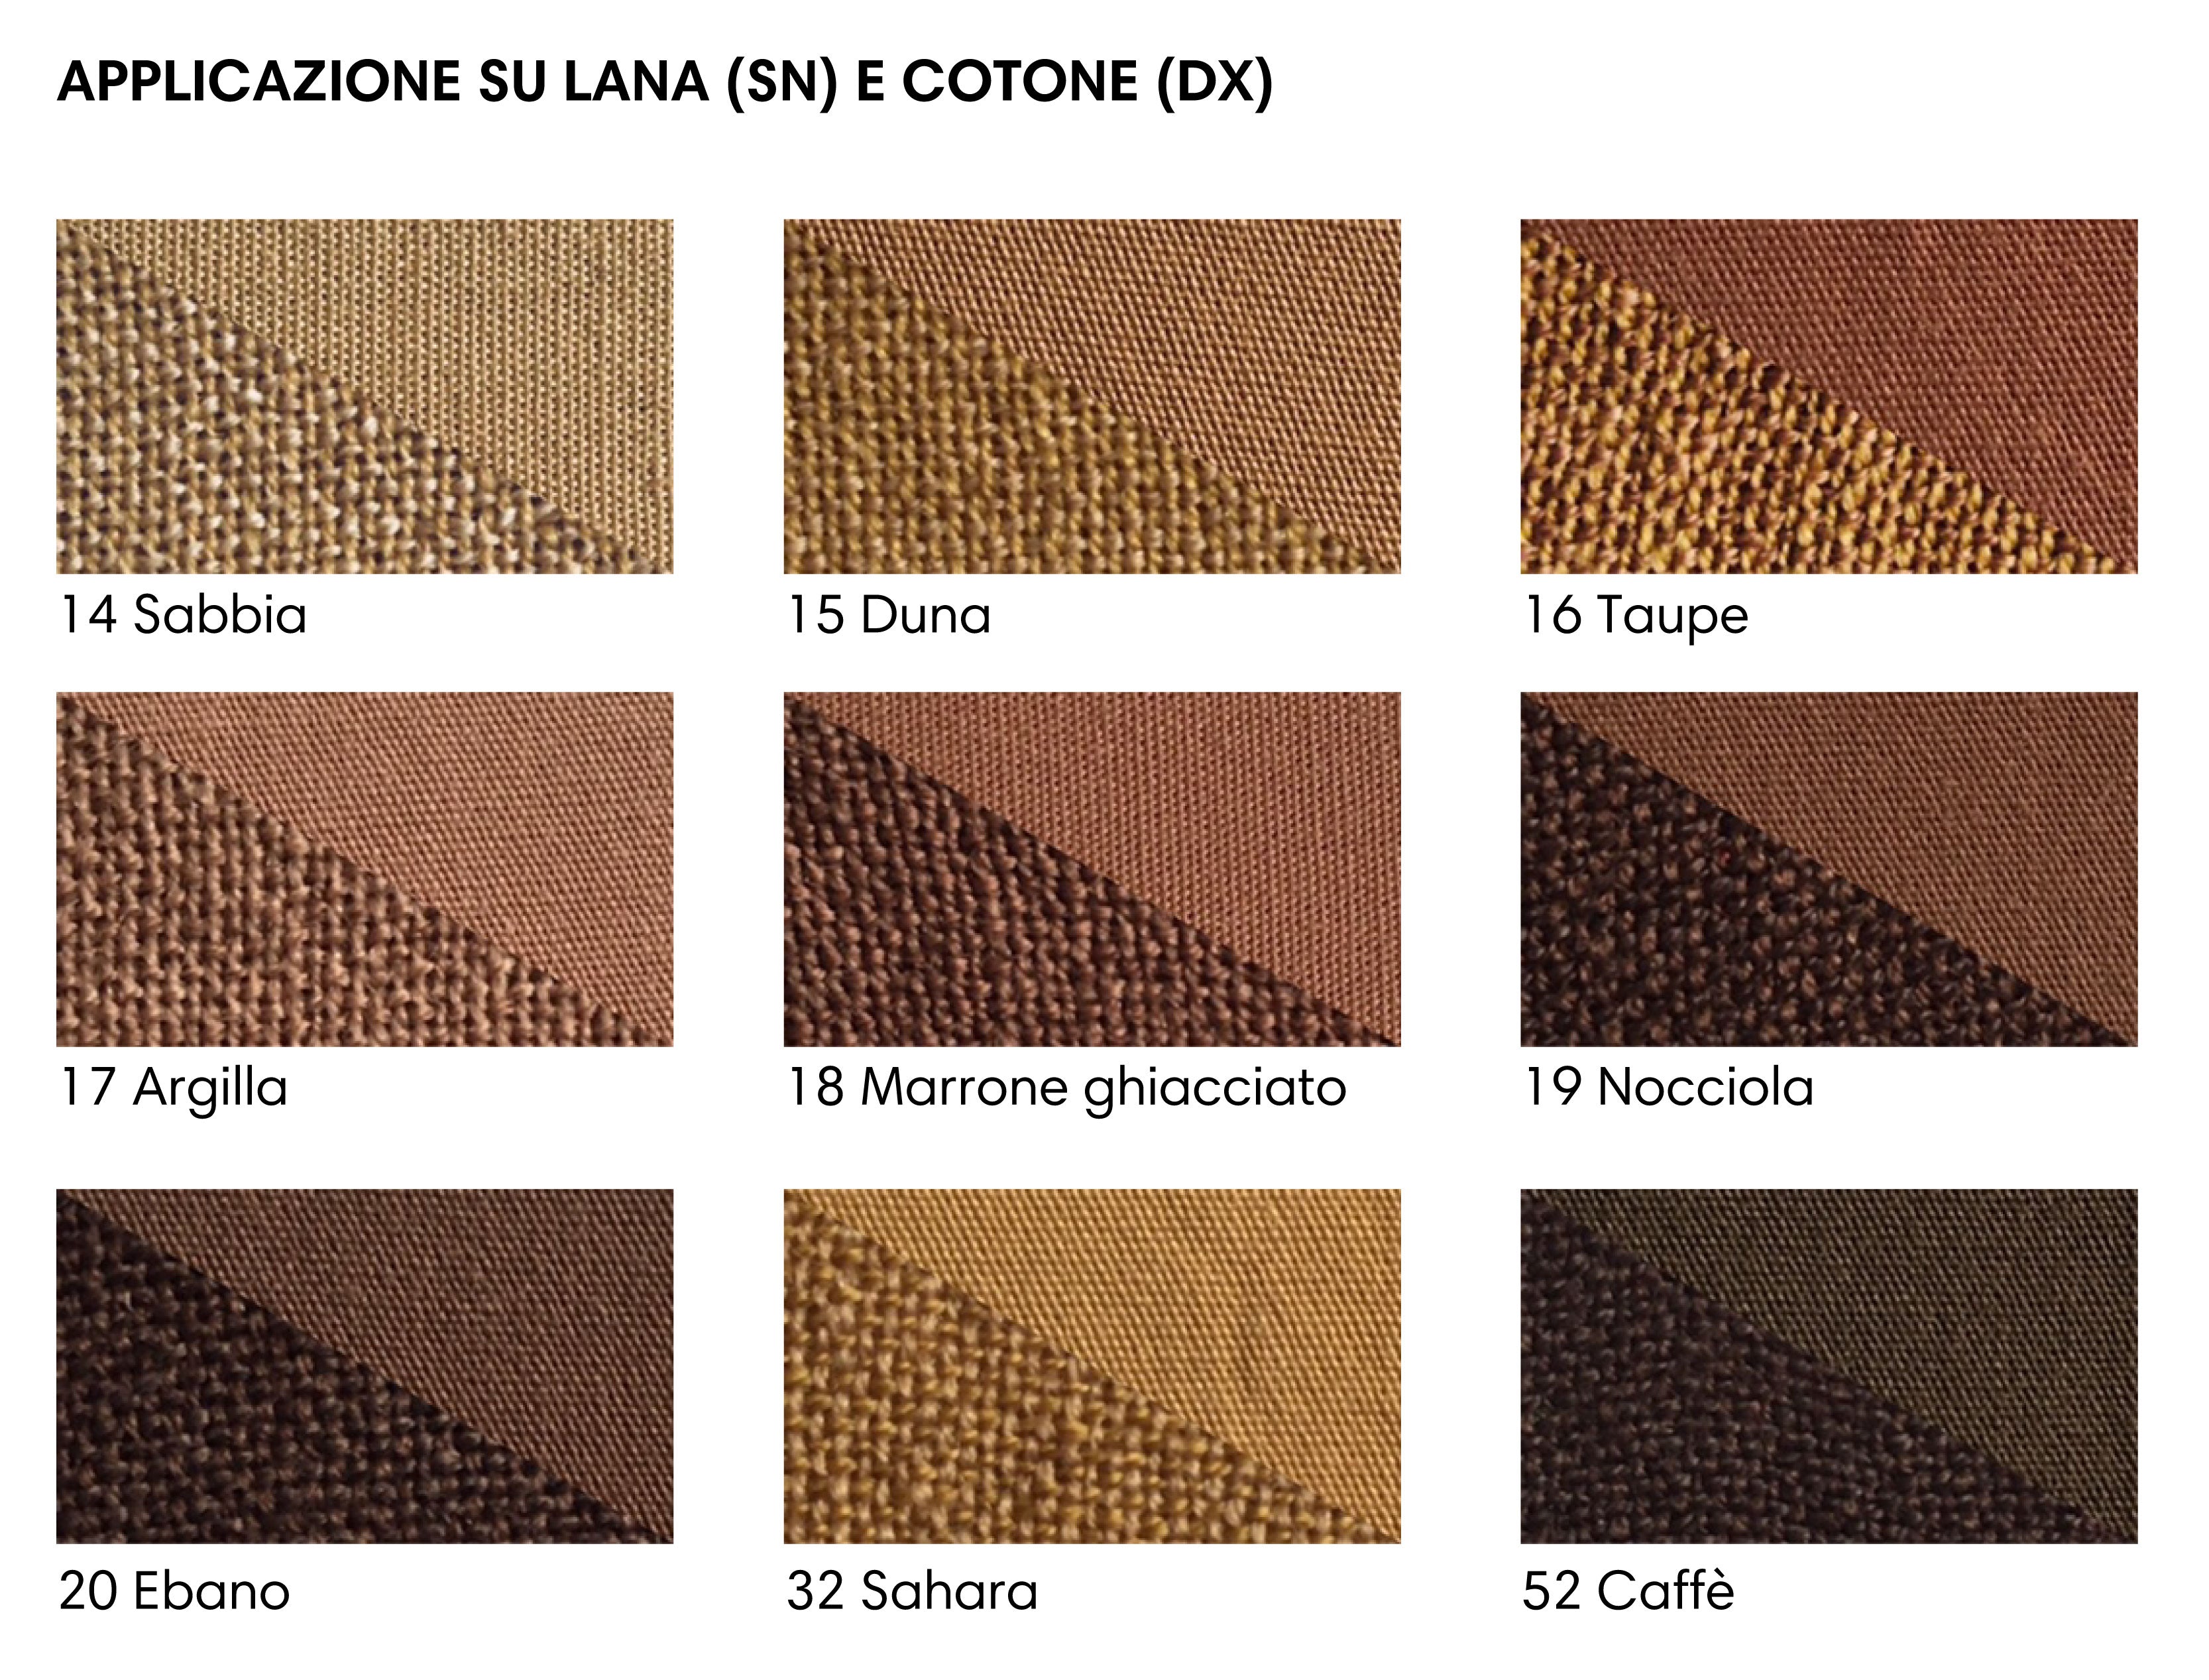 Powder fabric dye - shades of Brown